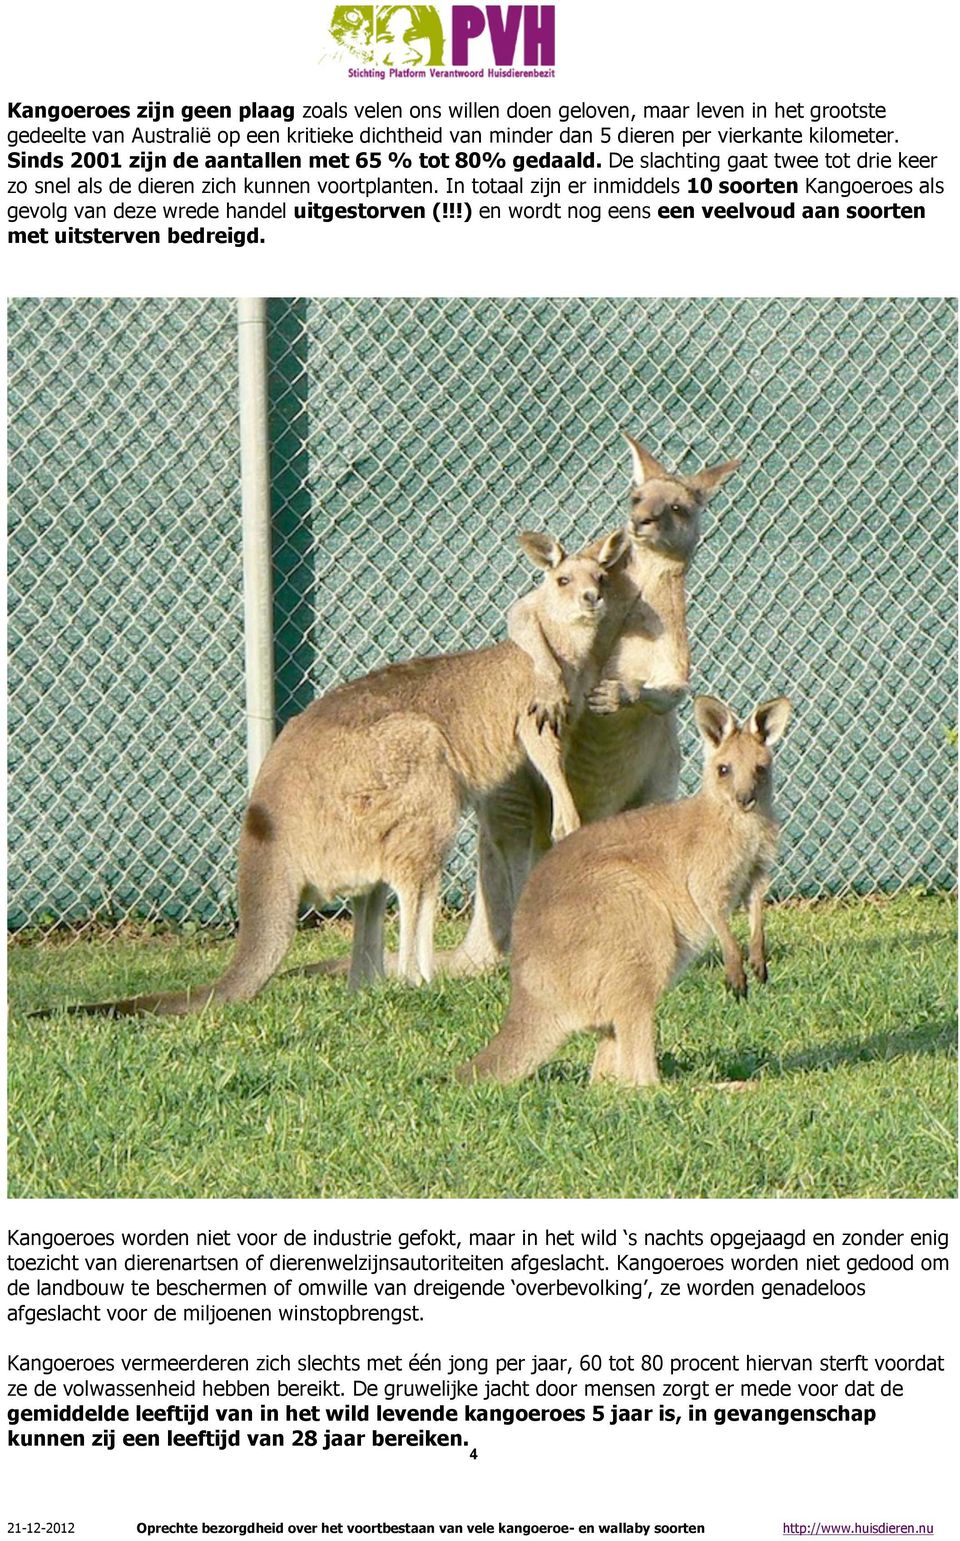 In totaal zijn er inmiddels 10 soorten Kangoeroes als gevolg van deze wrede handel uitgestorven (!!!) en wordt nog eens een veelvoud aan soorten met uitsterven bedreigd.